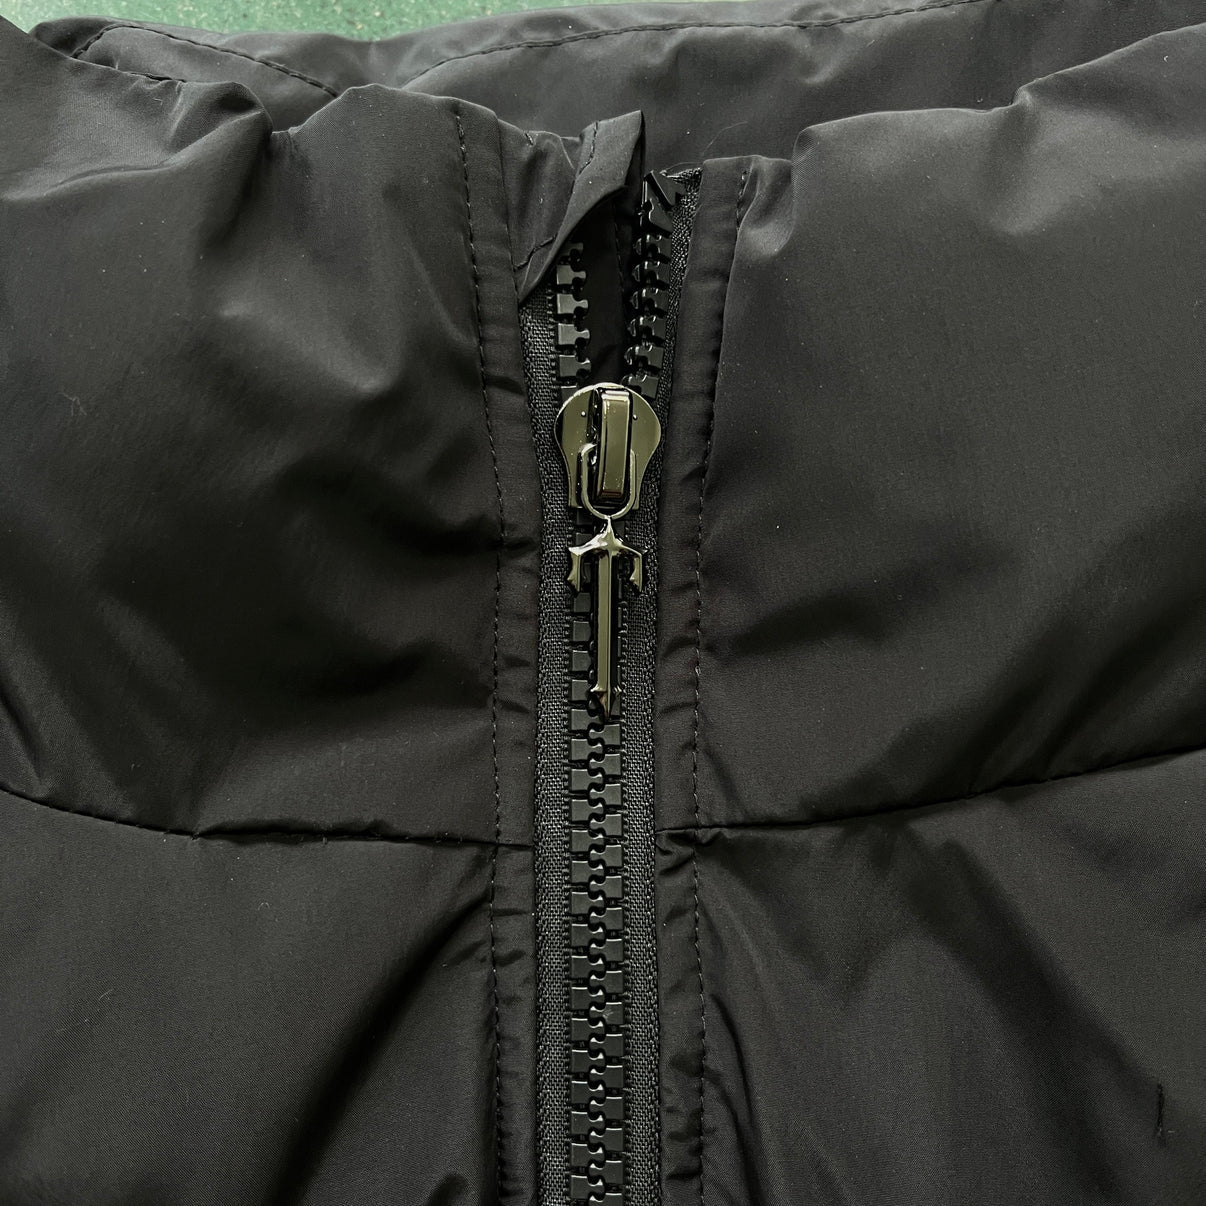 TS Detachable Hooded Puffer Jacket